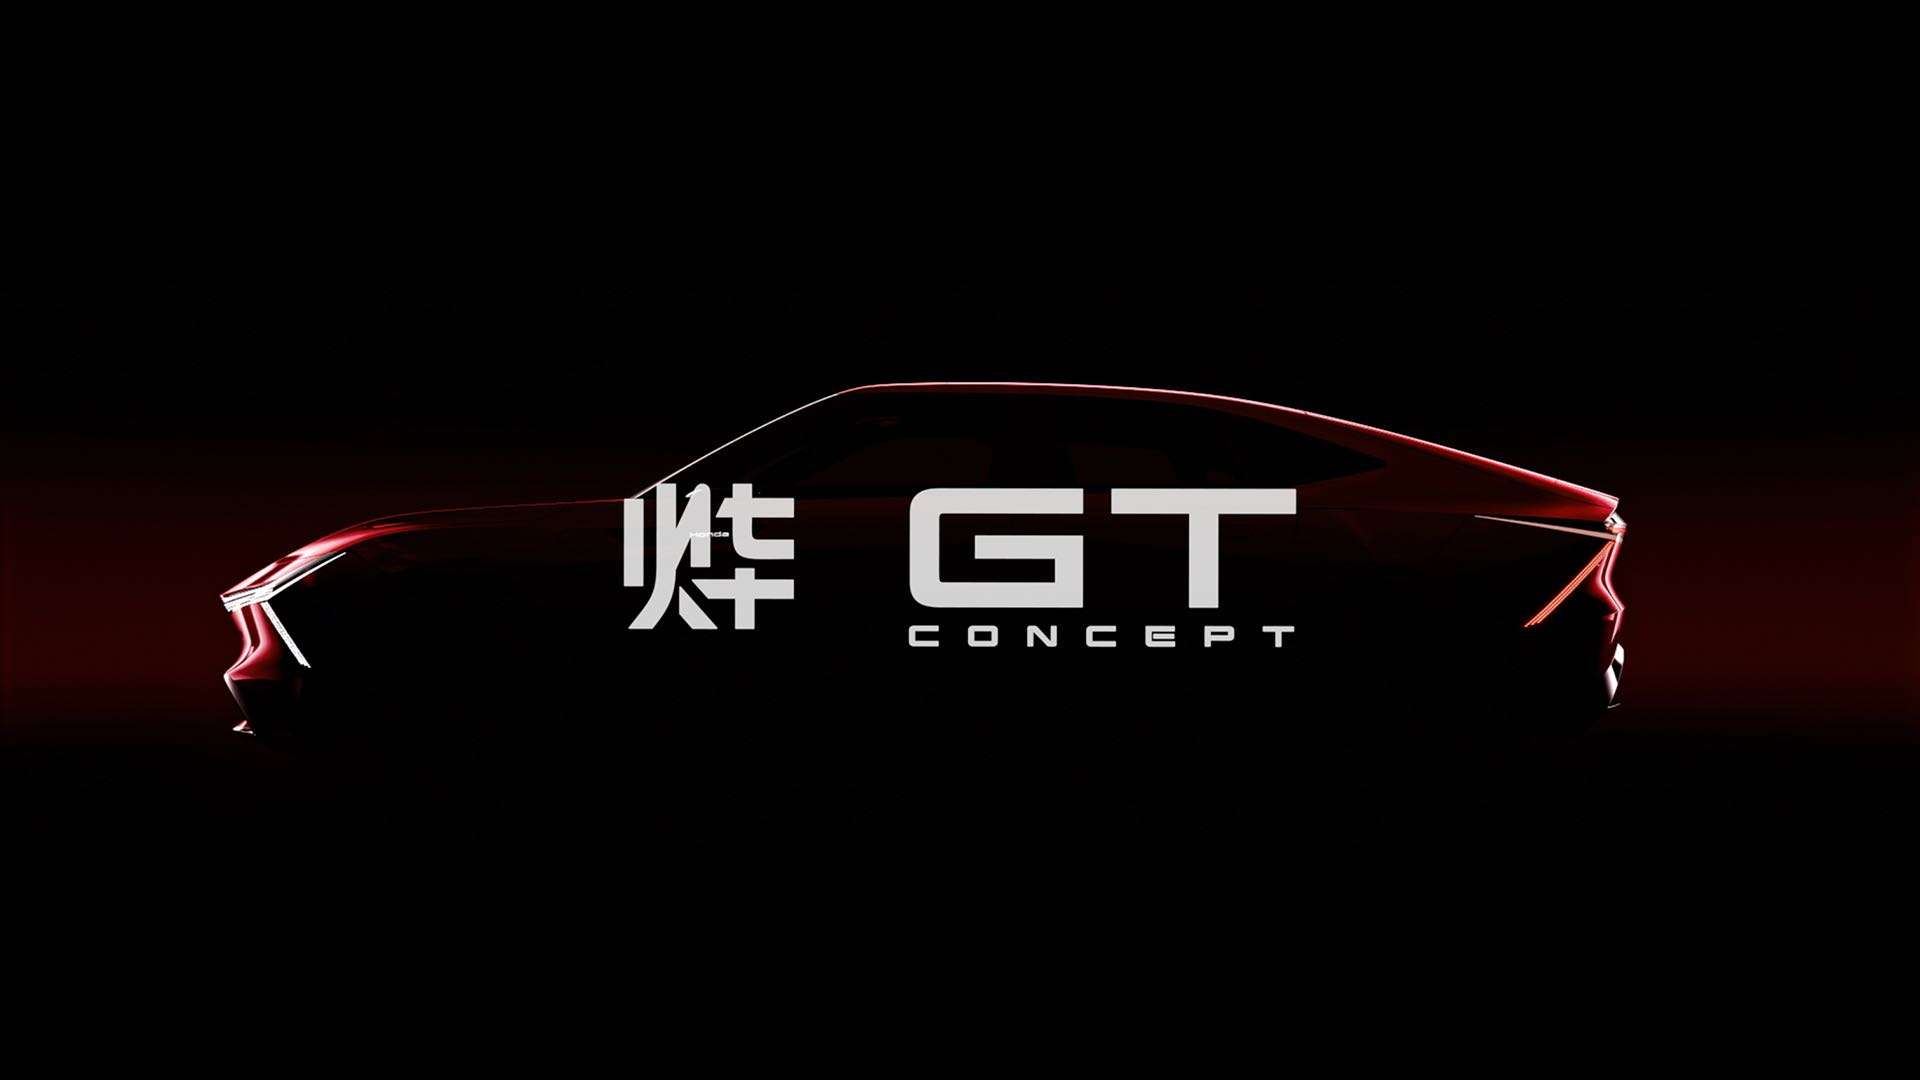 Honda 烨GT CONCEPT